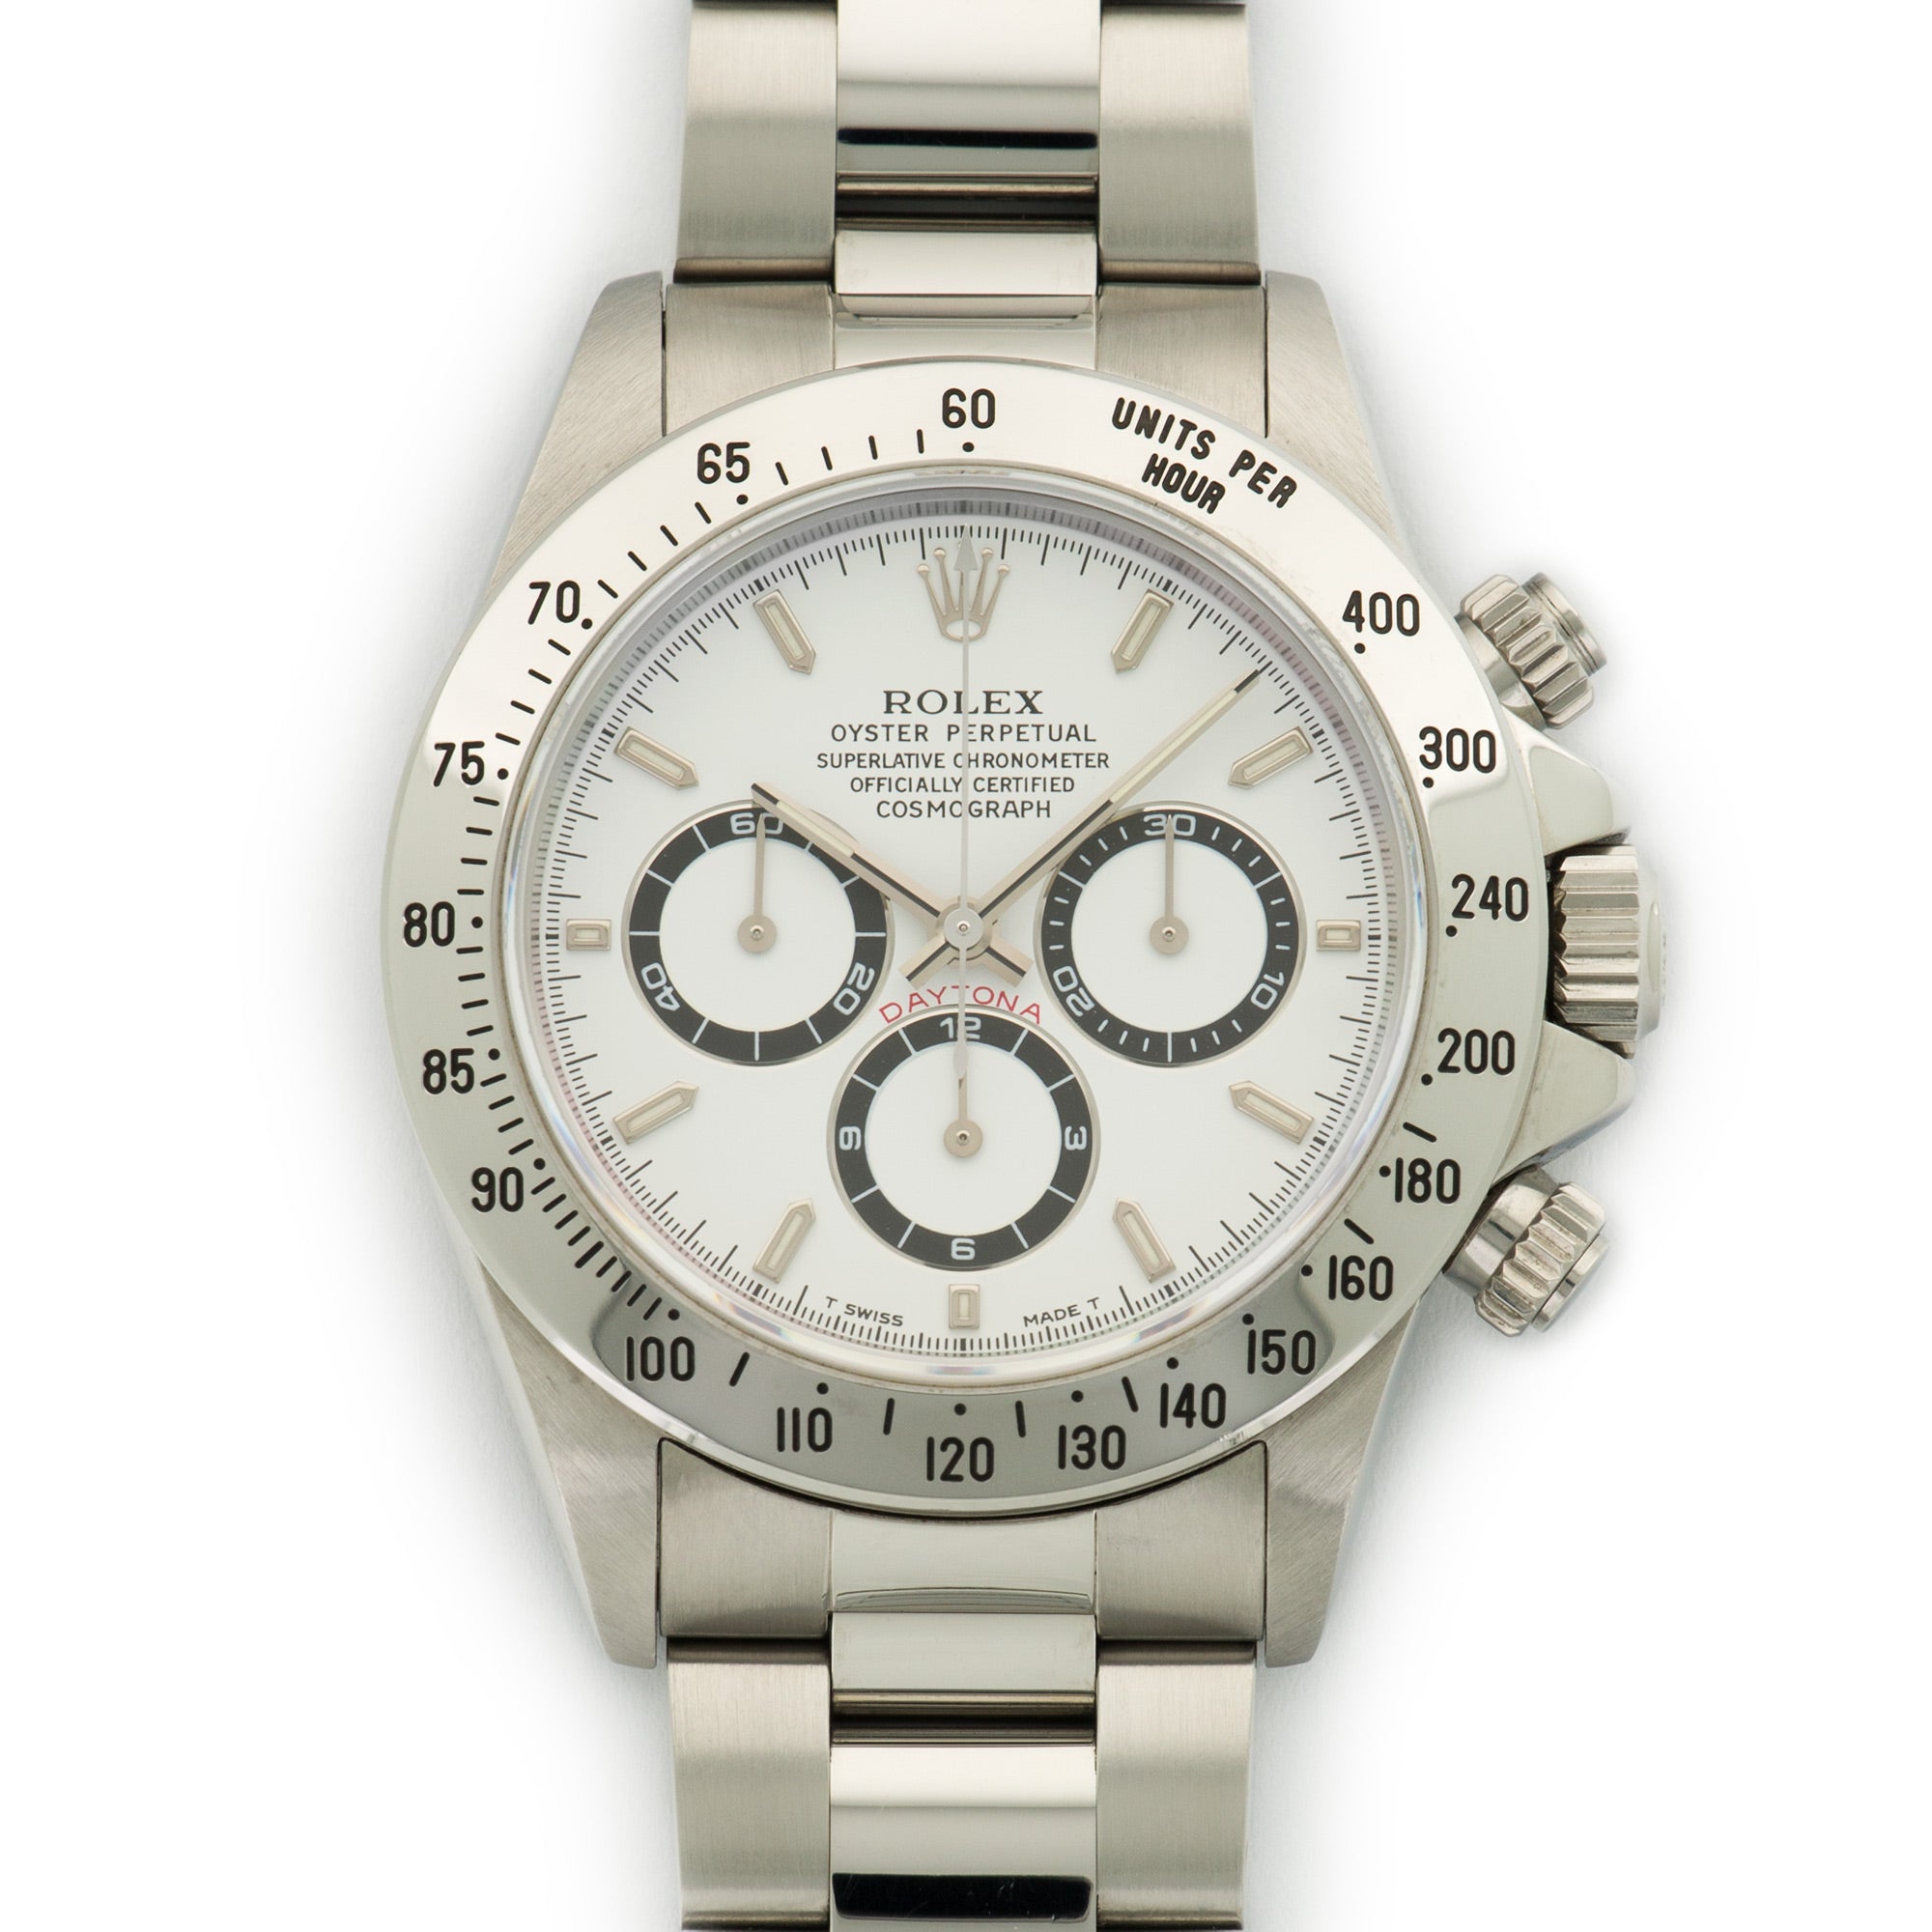 Rolex - Rolex Steel Cosmograph Daytona Zenith Movement Watch Ref. 16520 - The Keystone Watches